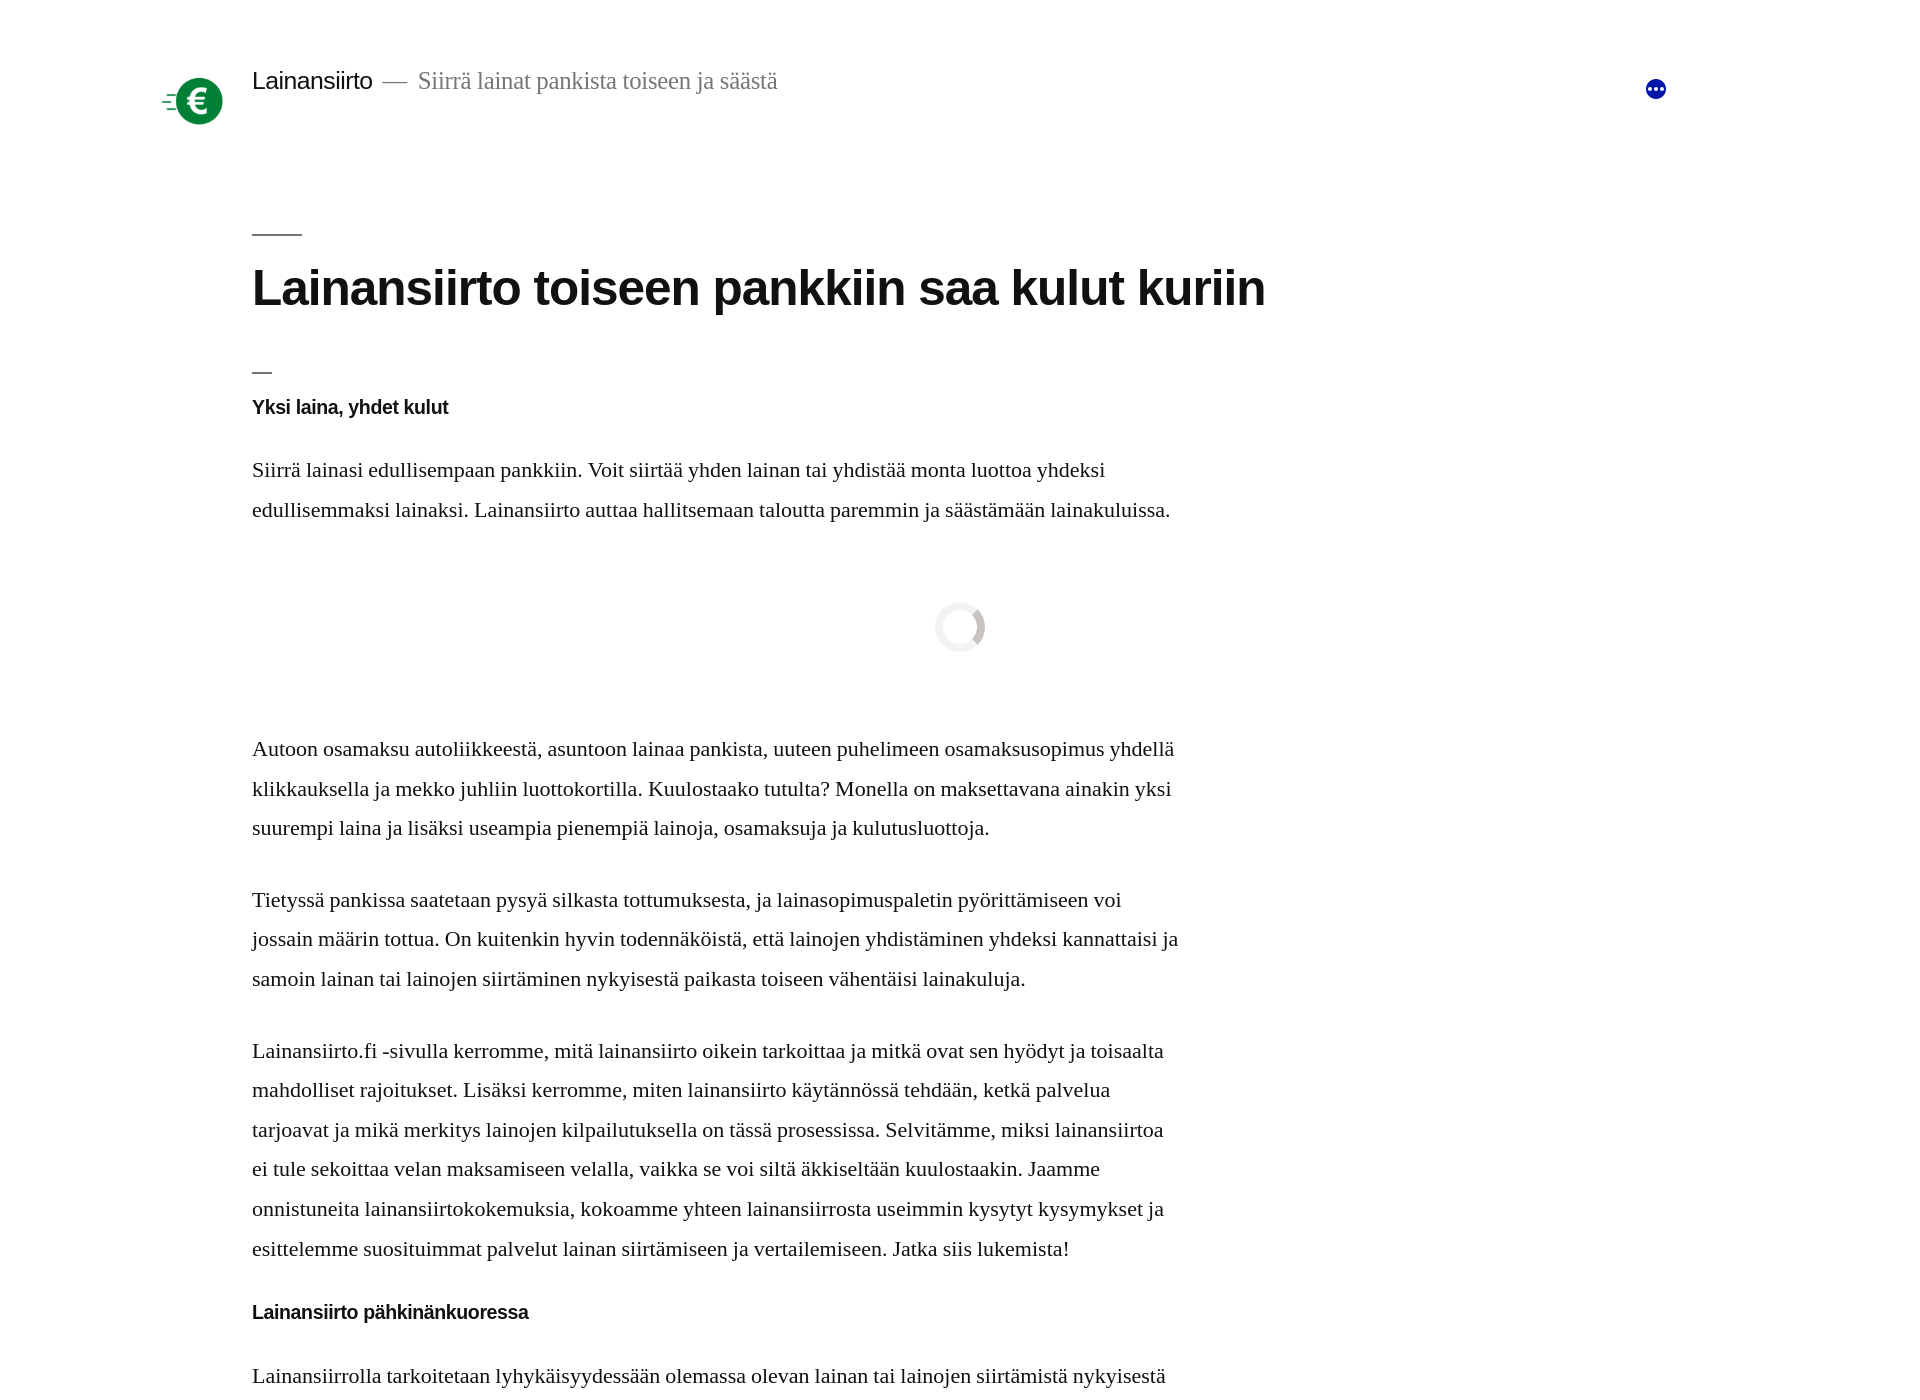 Näyttökuva lainansiirto.fi